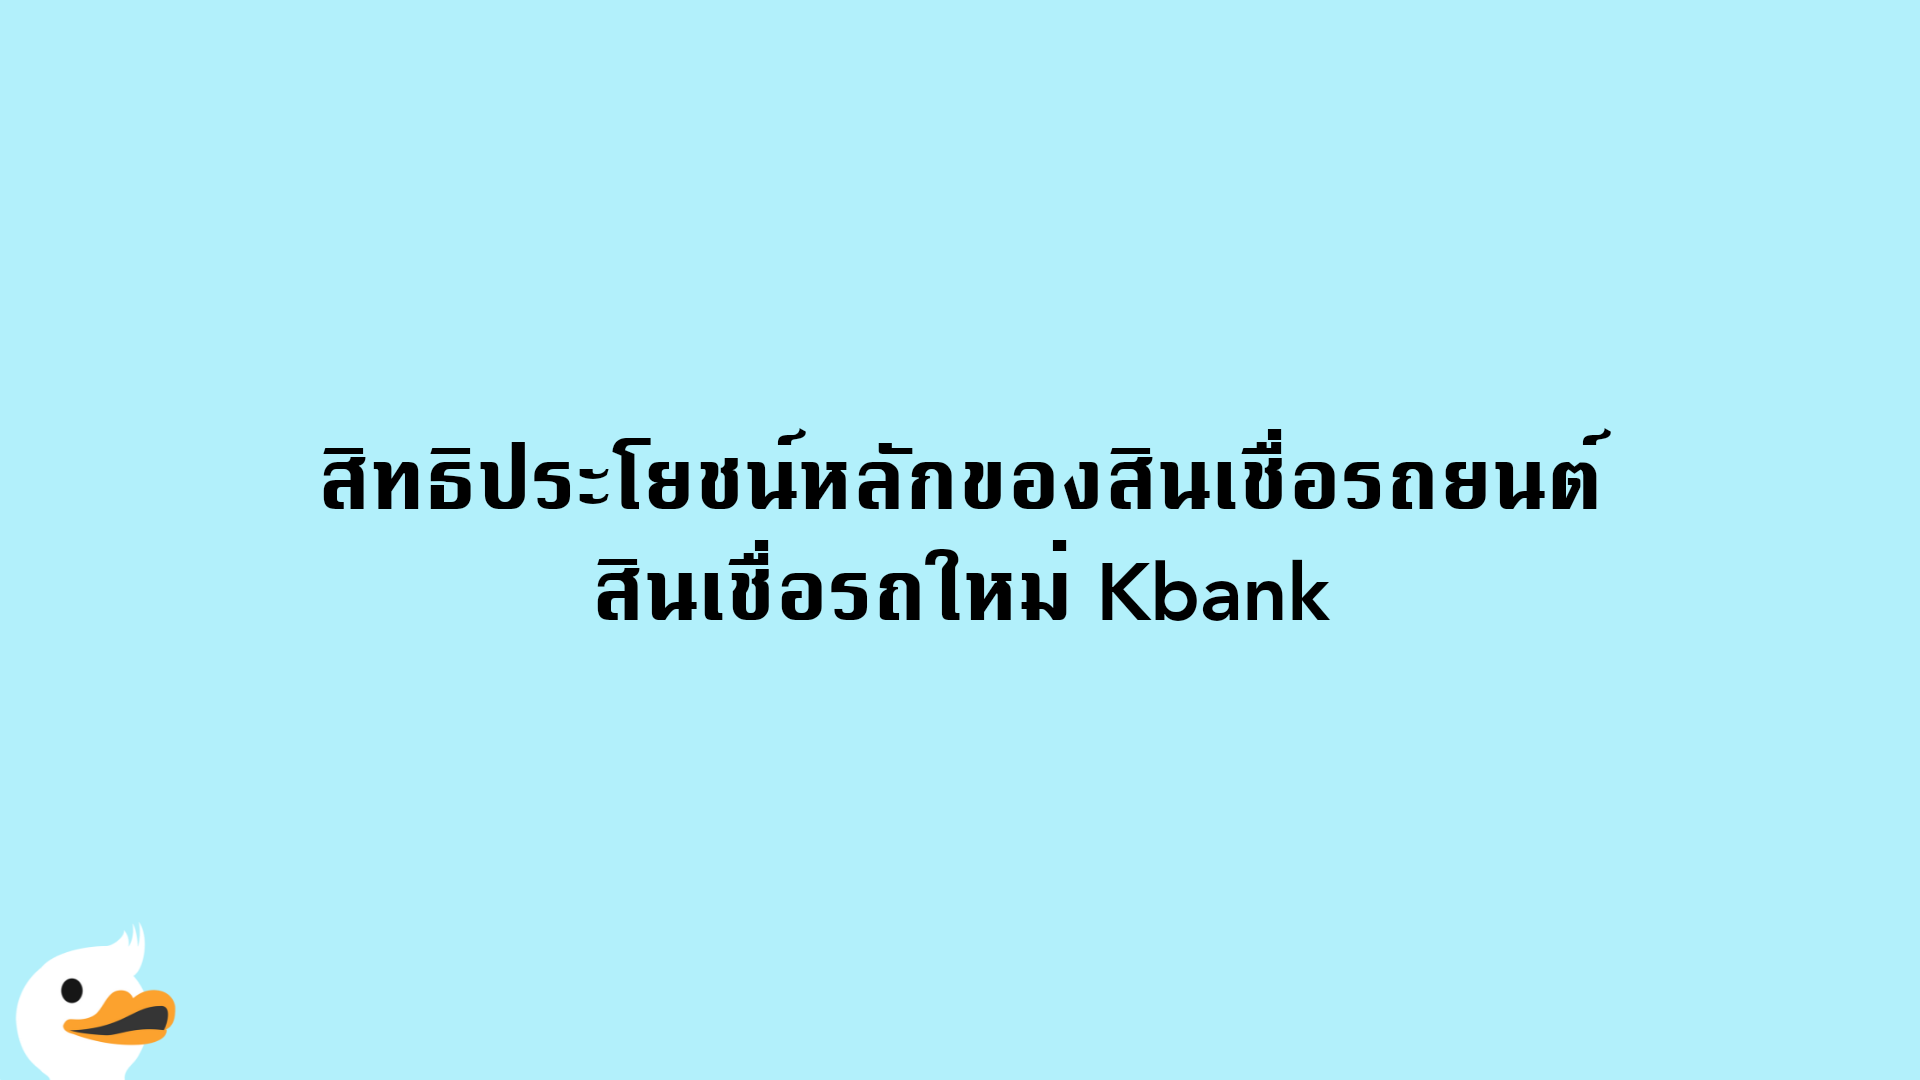 สิทธิประโยชน์หลักของสินเชื่อรถยนต์ สินเชื่อรถใหม่ Kbank